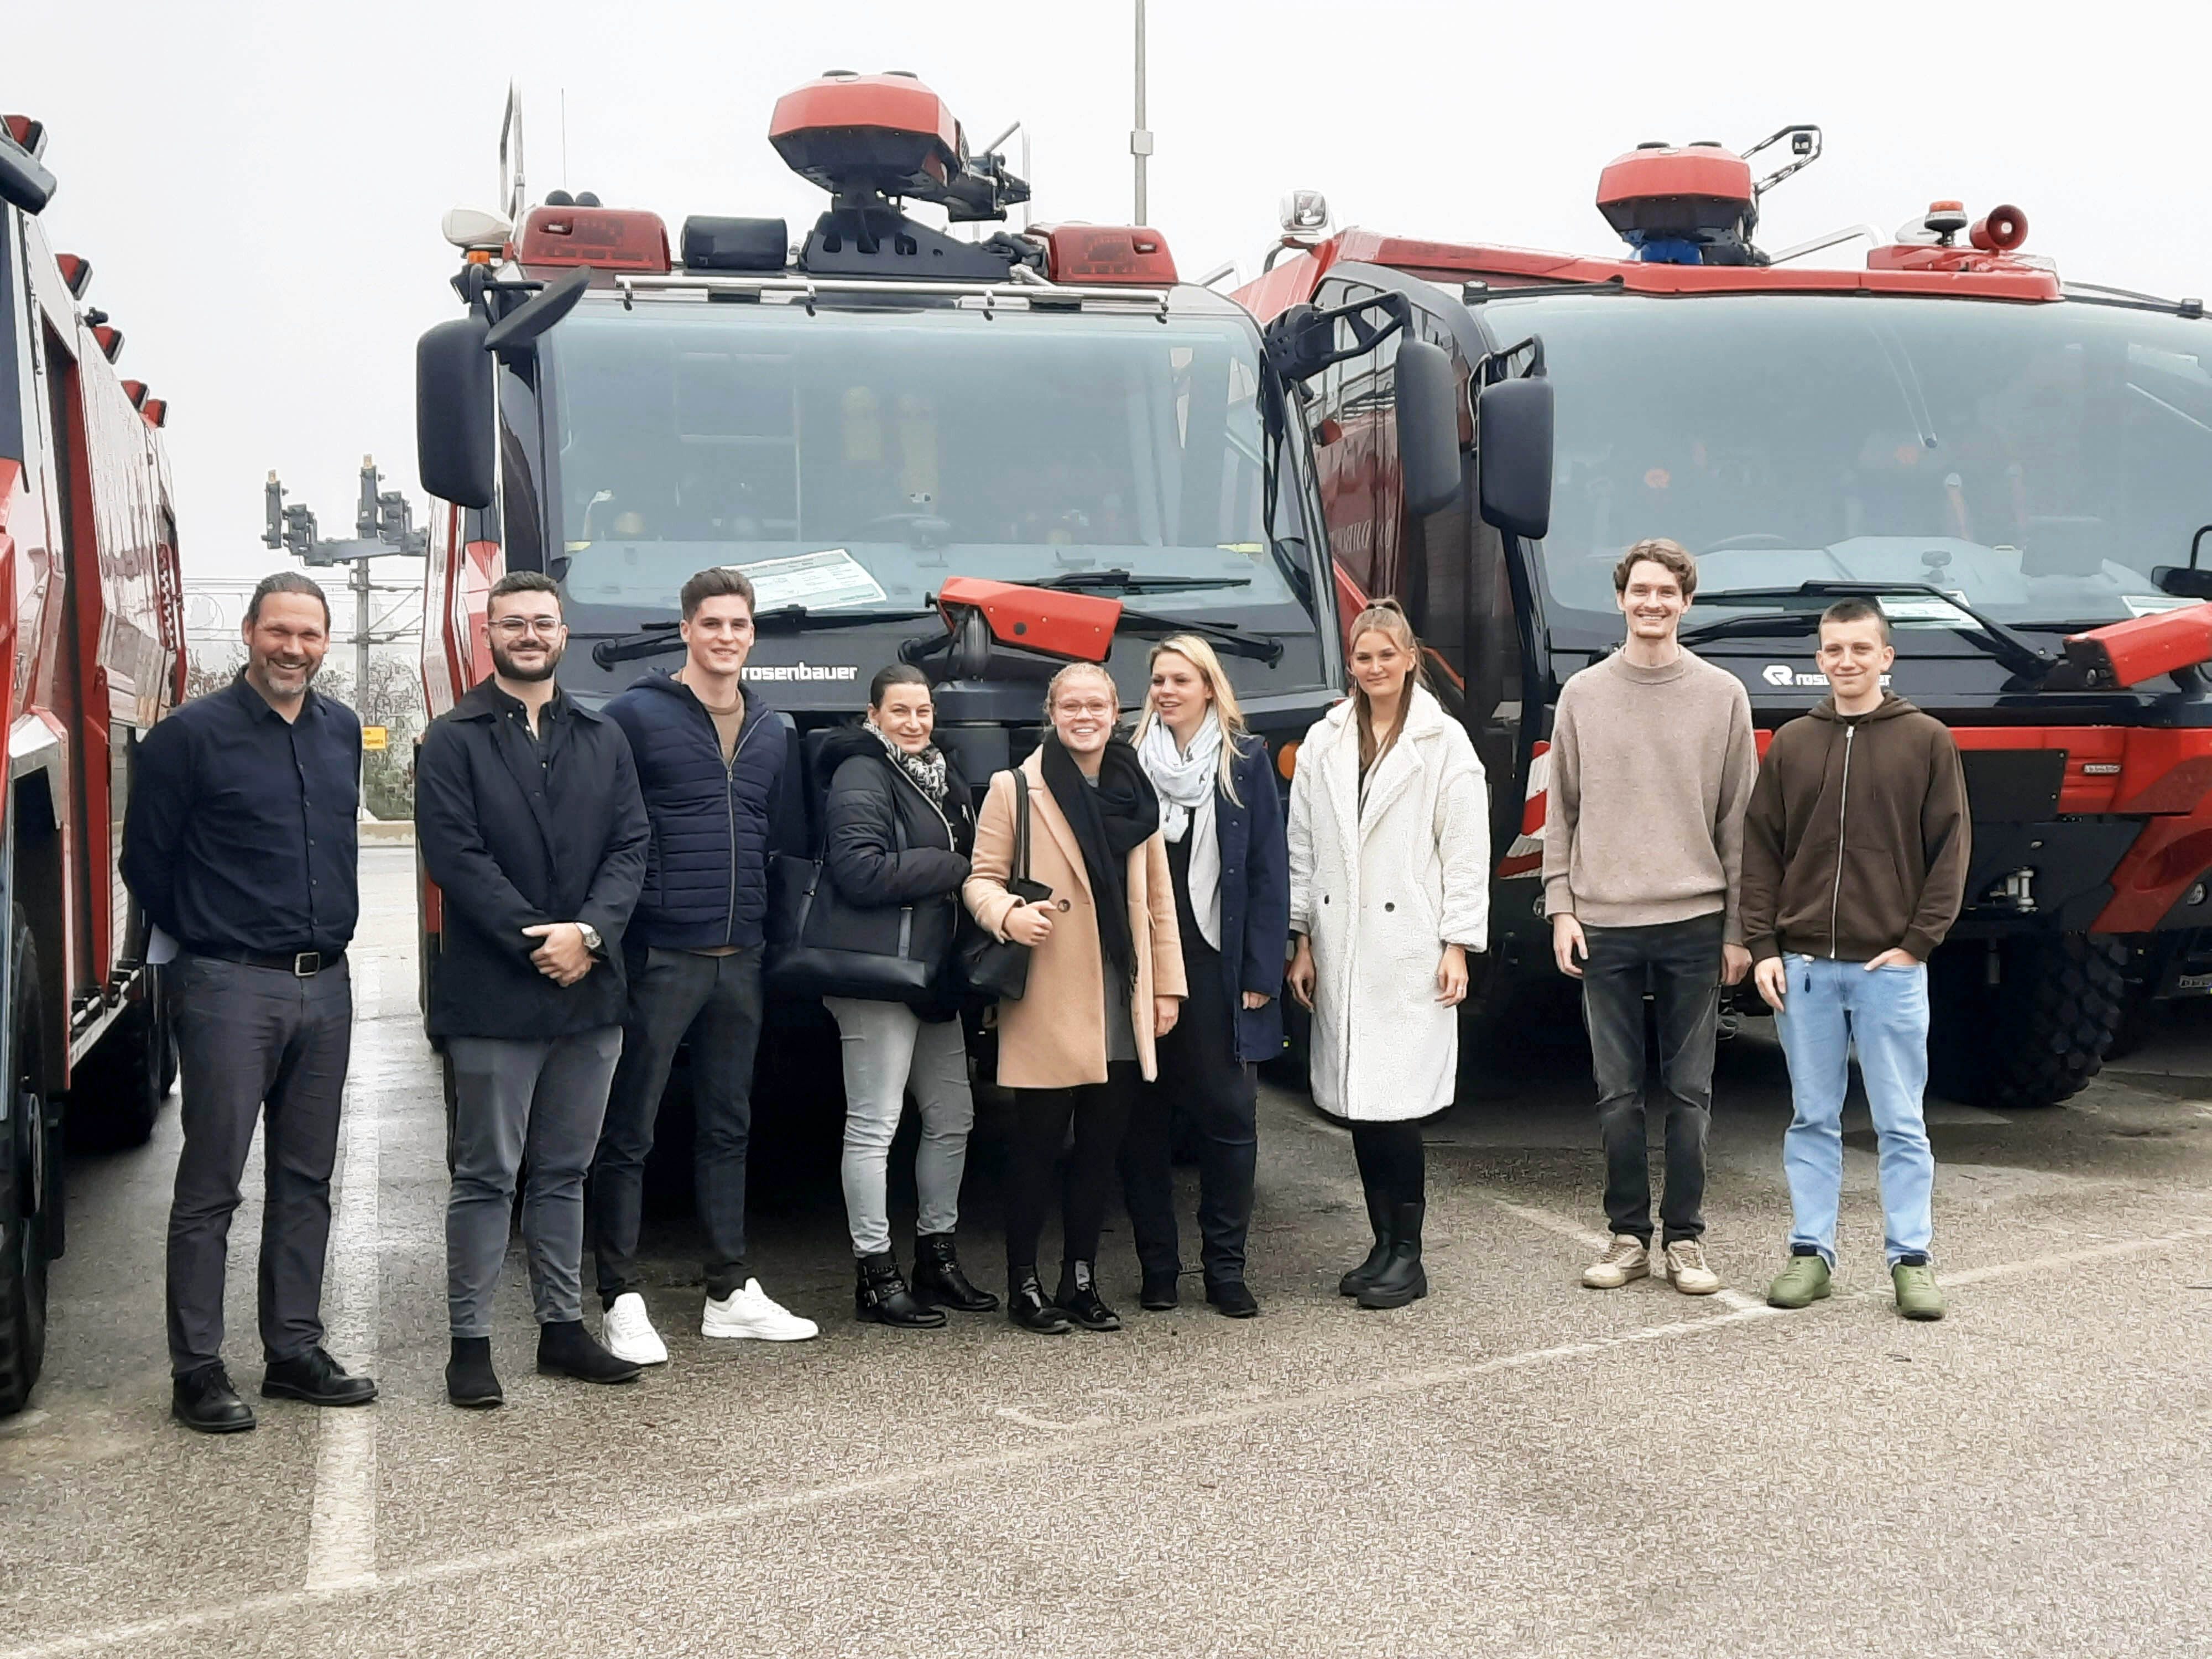 Auf dem Foto stehen neun Männer und Frauen vor Feuerwehrautos der Firma Rosenbauer und lächeln für ein Gruppenfoto.